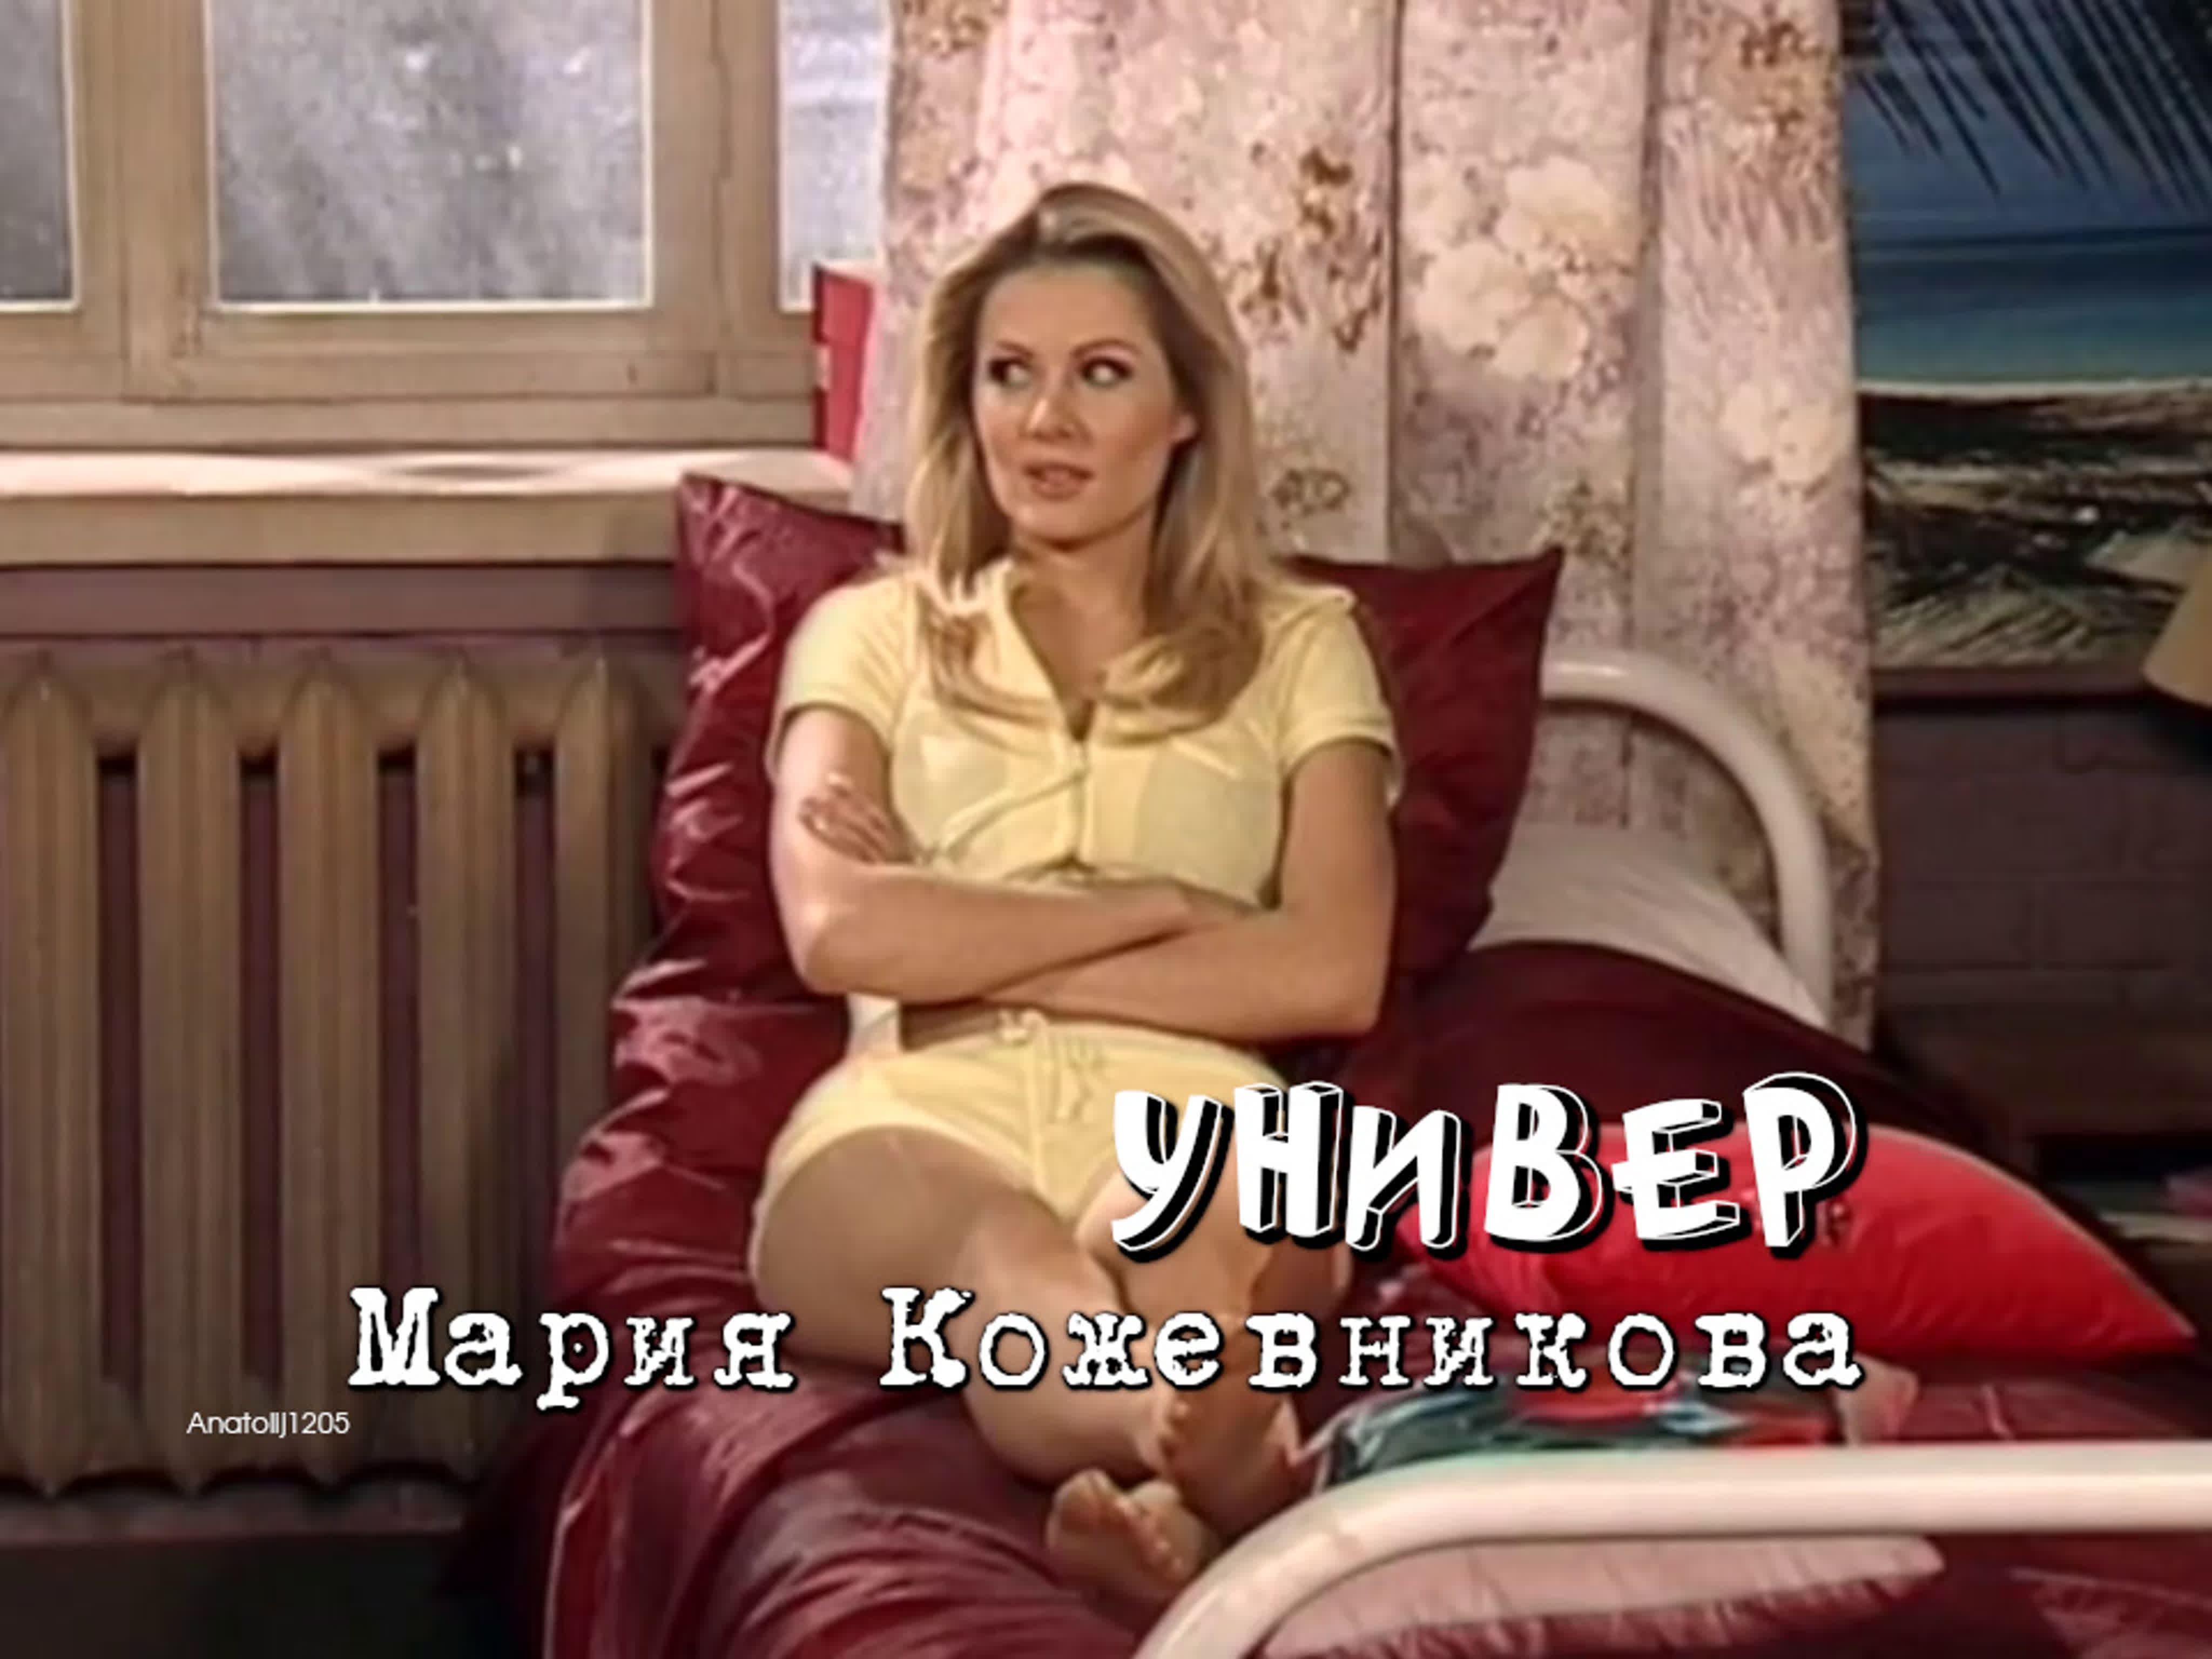 Мария Кожевникова: «Я еще не любила по-настоящему» - автонагаз55.рф